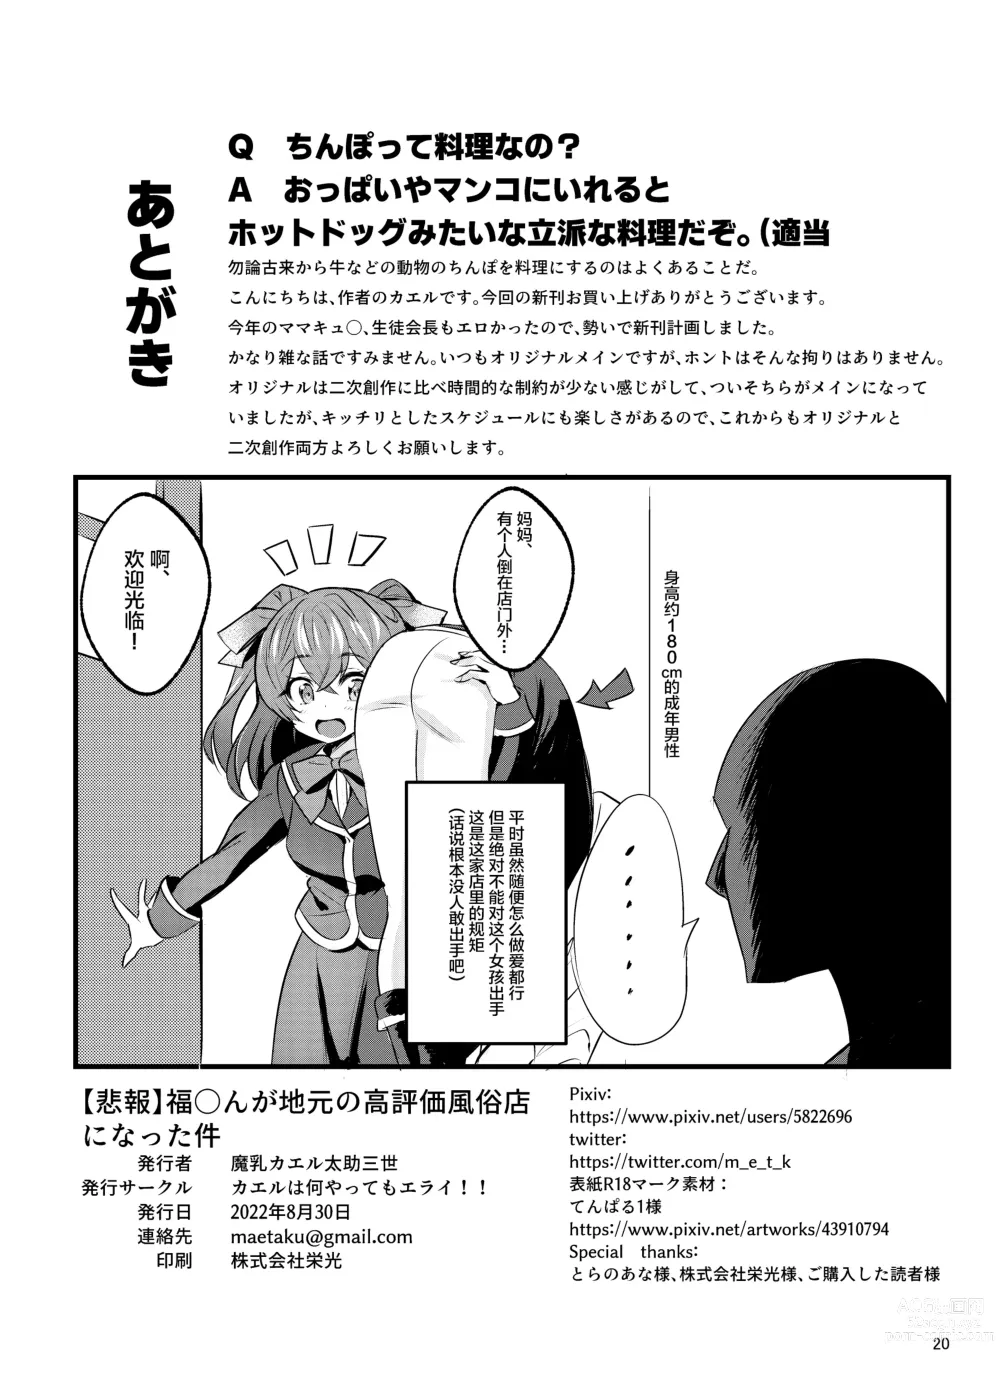 Page 21 of doujinshi Fuku*n ga Jimoto no Kou Hyouka Fuzokuten ni natta Ken